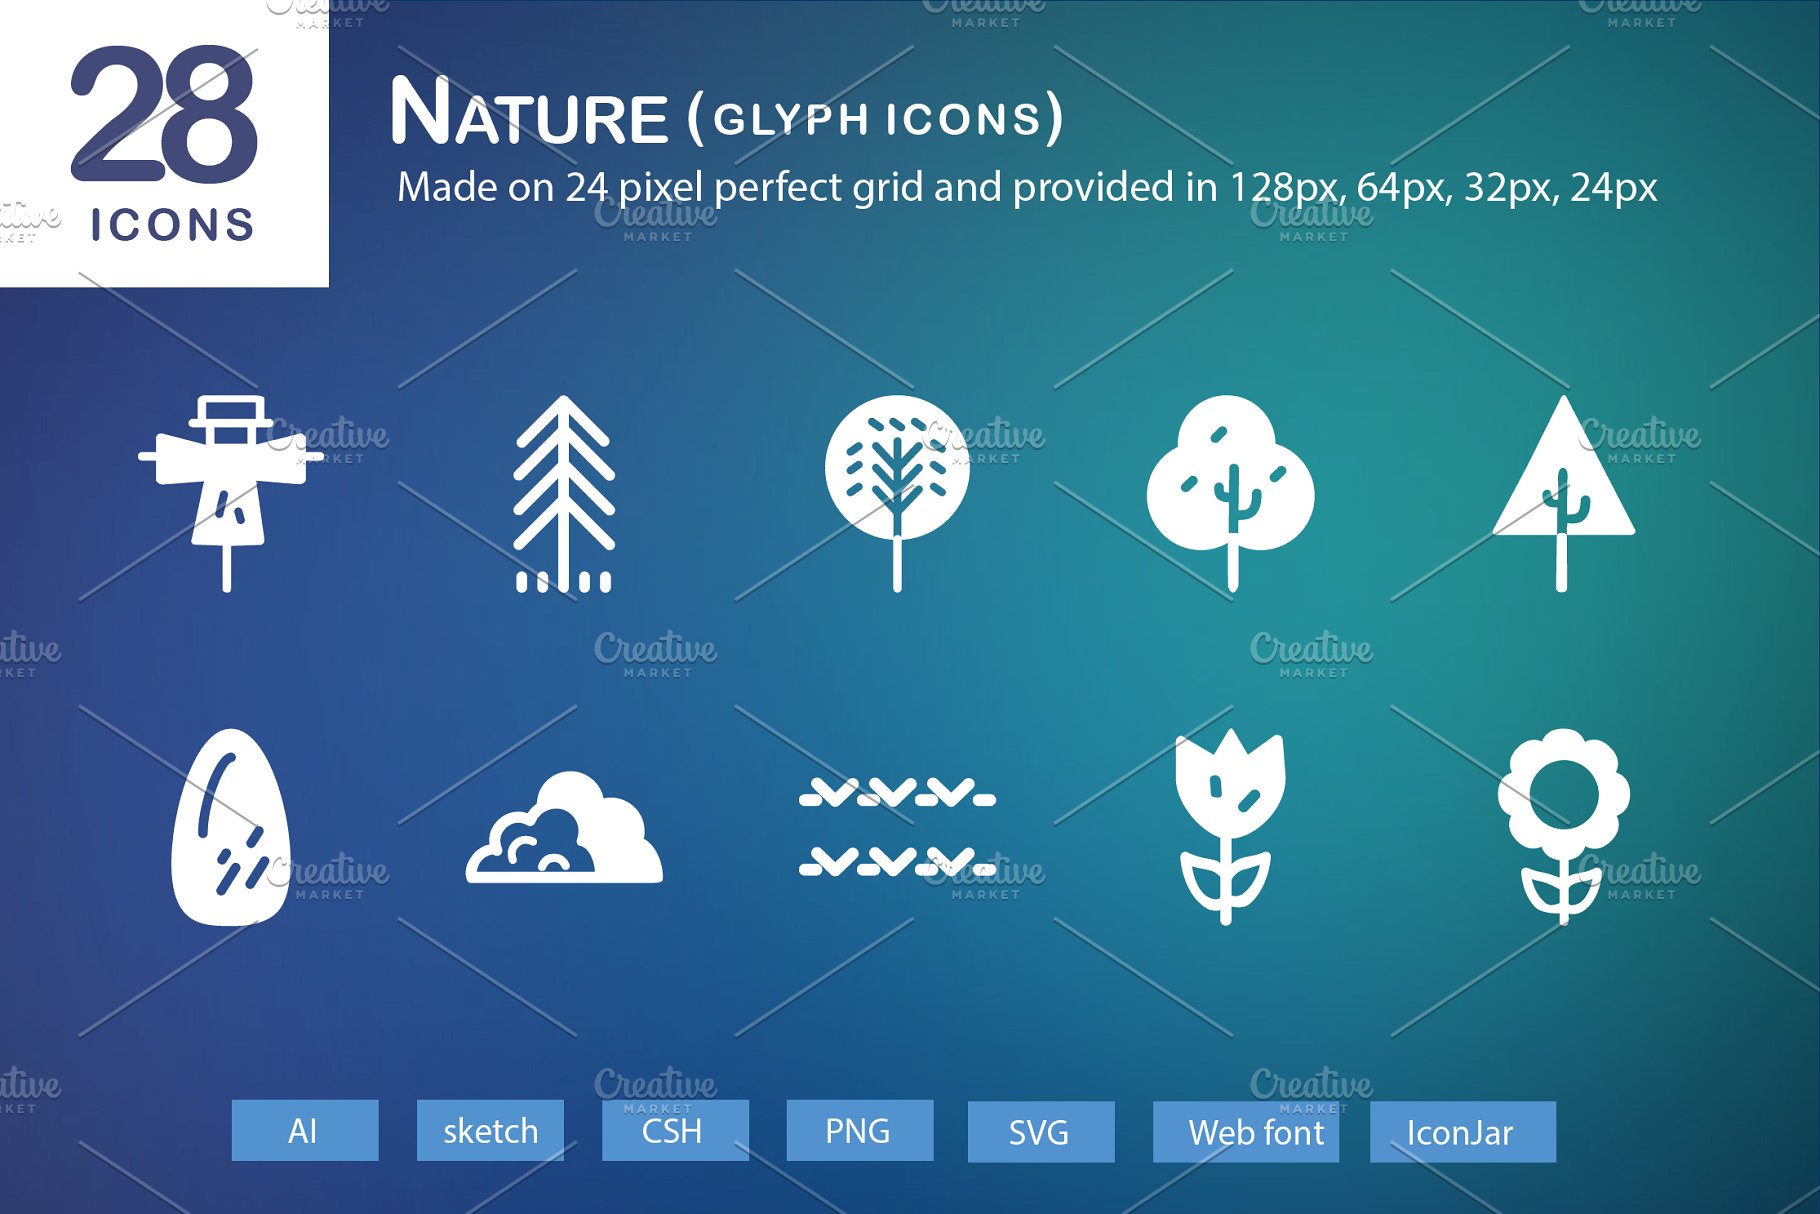 28个大自然元素字体16设计素材网精选图标 28 Nature Glyph Icons插图